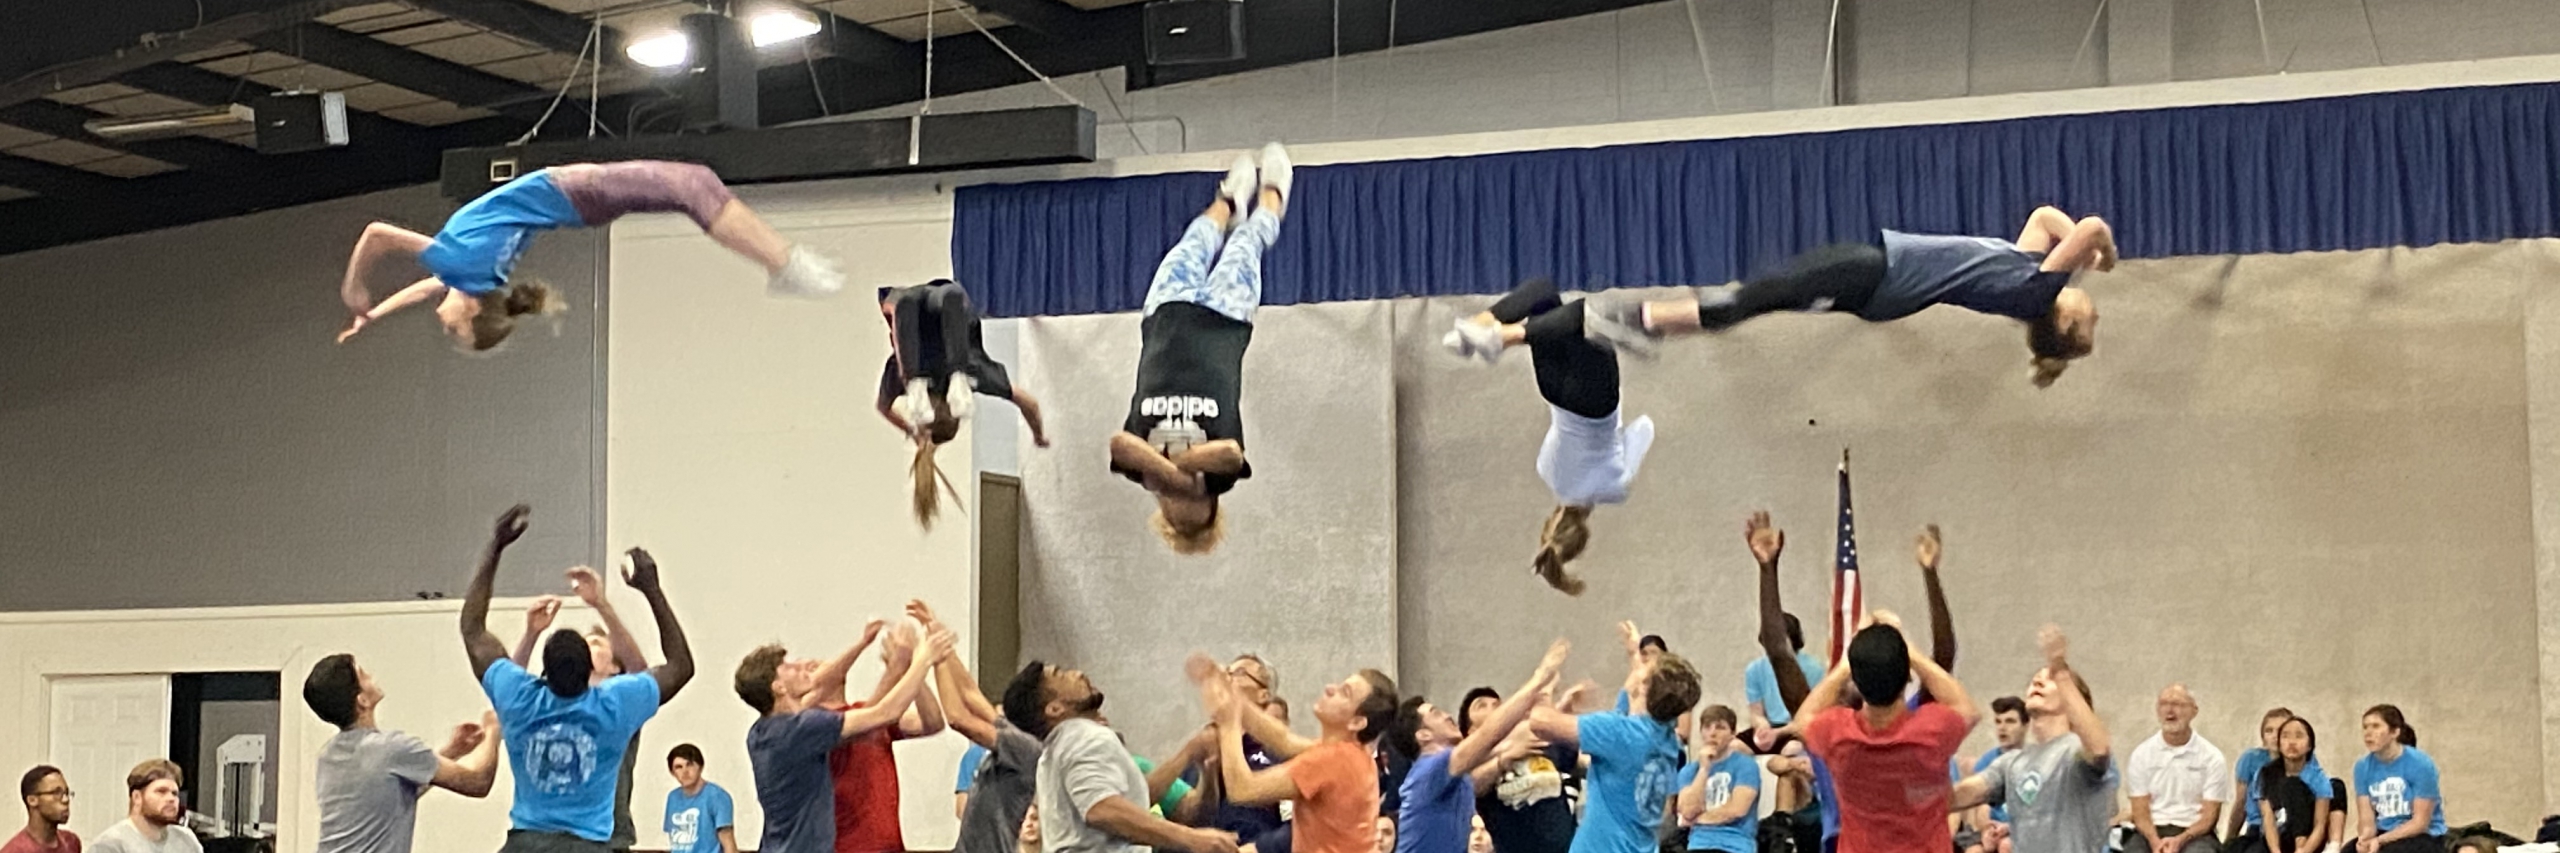 Acros gymnastics in action